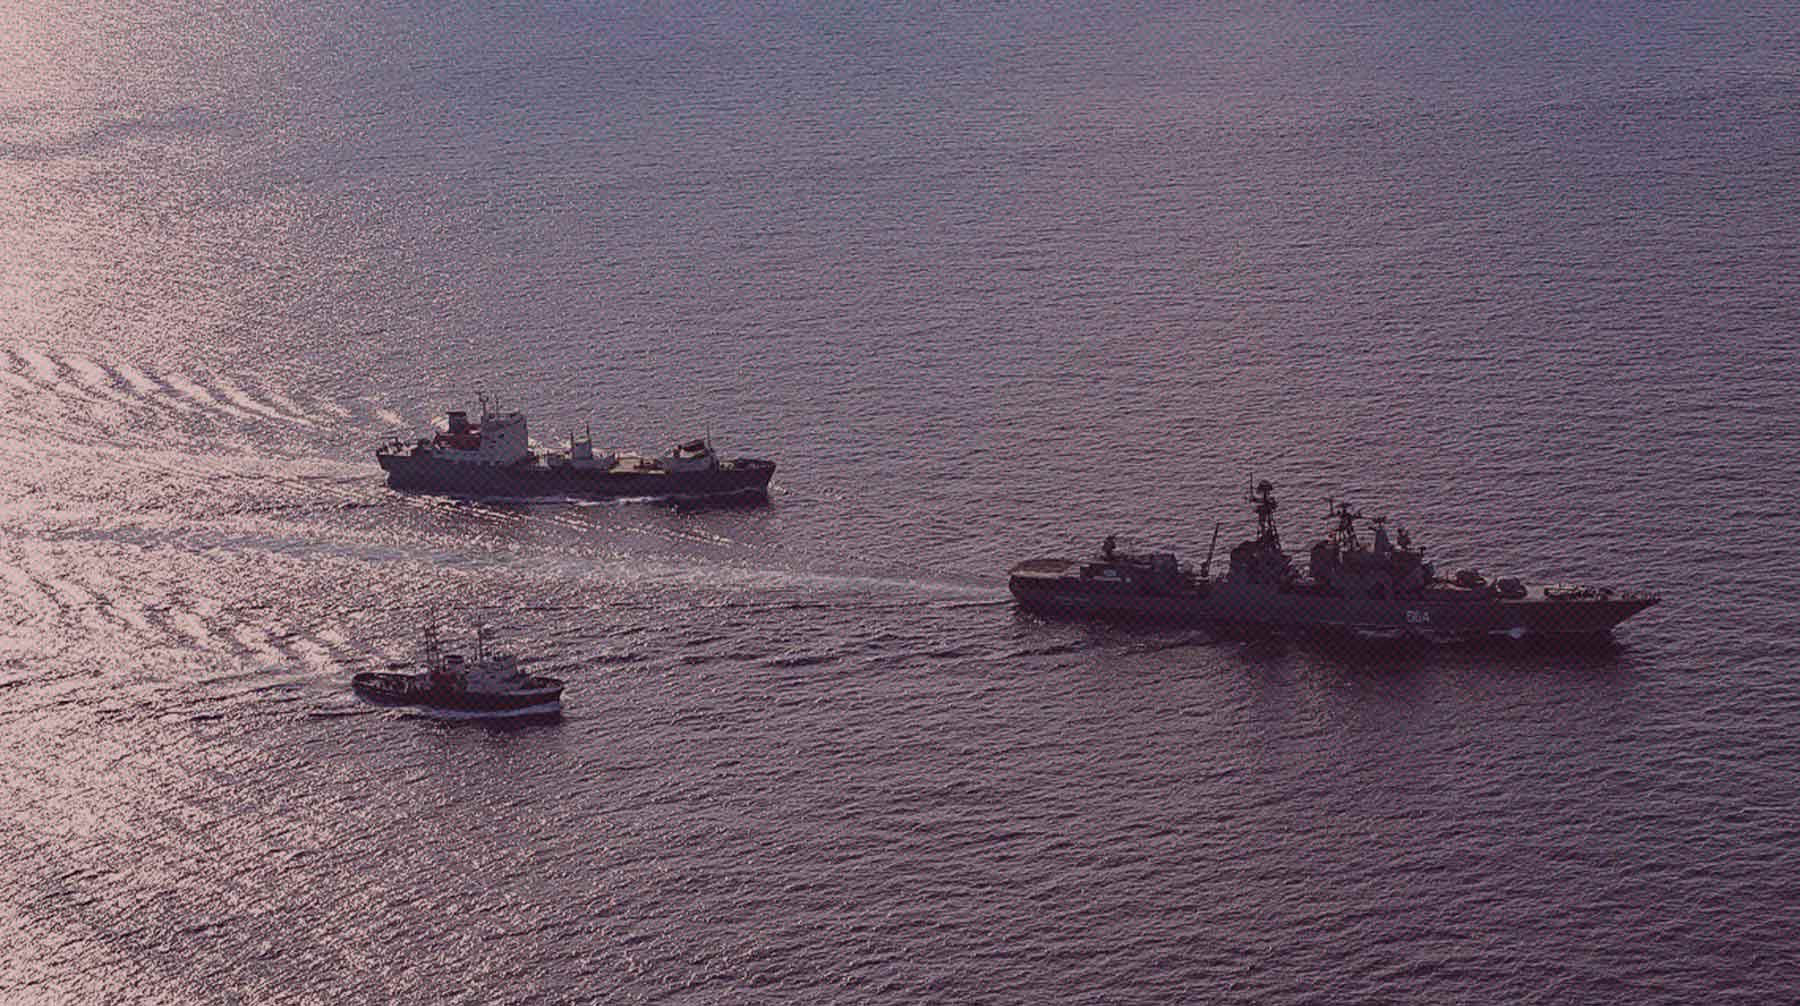 Минобороны РФ сообщило о гибели флагмана Черноморского флота 14 апреля undefined